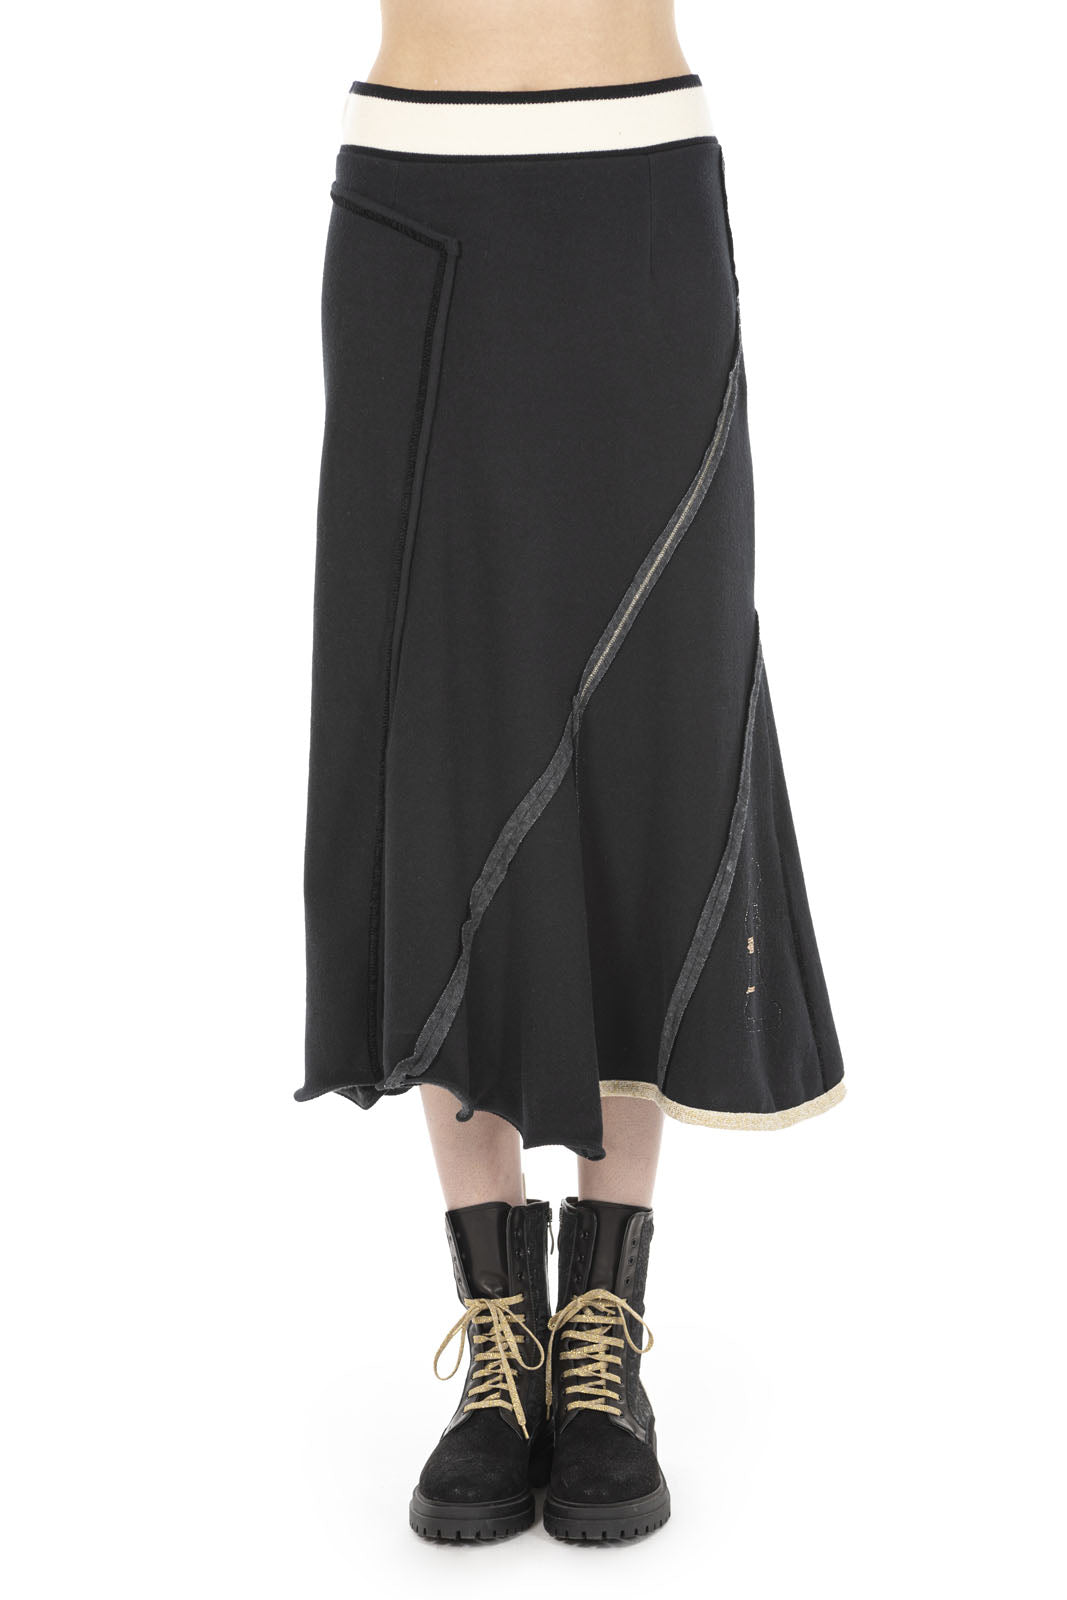 Elisa Cavaletti - Stripe Waistband Midi Skirt